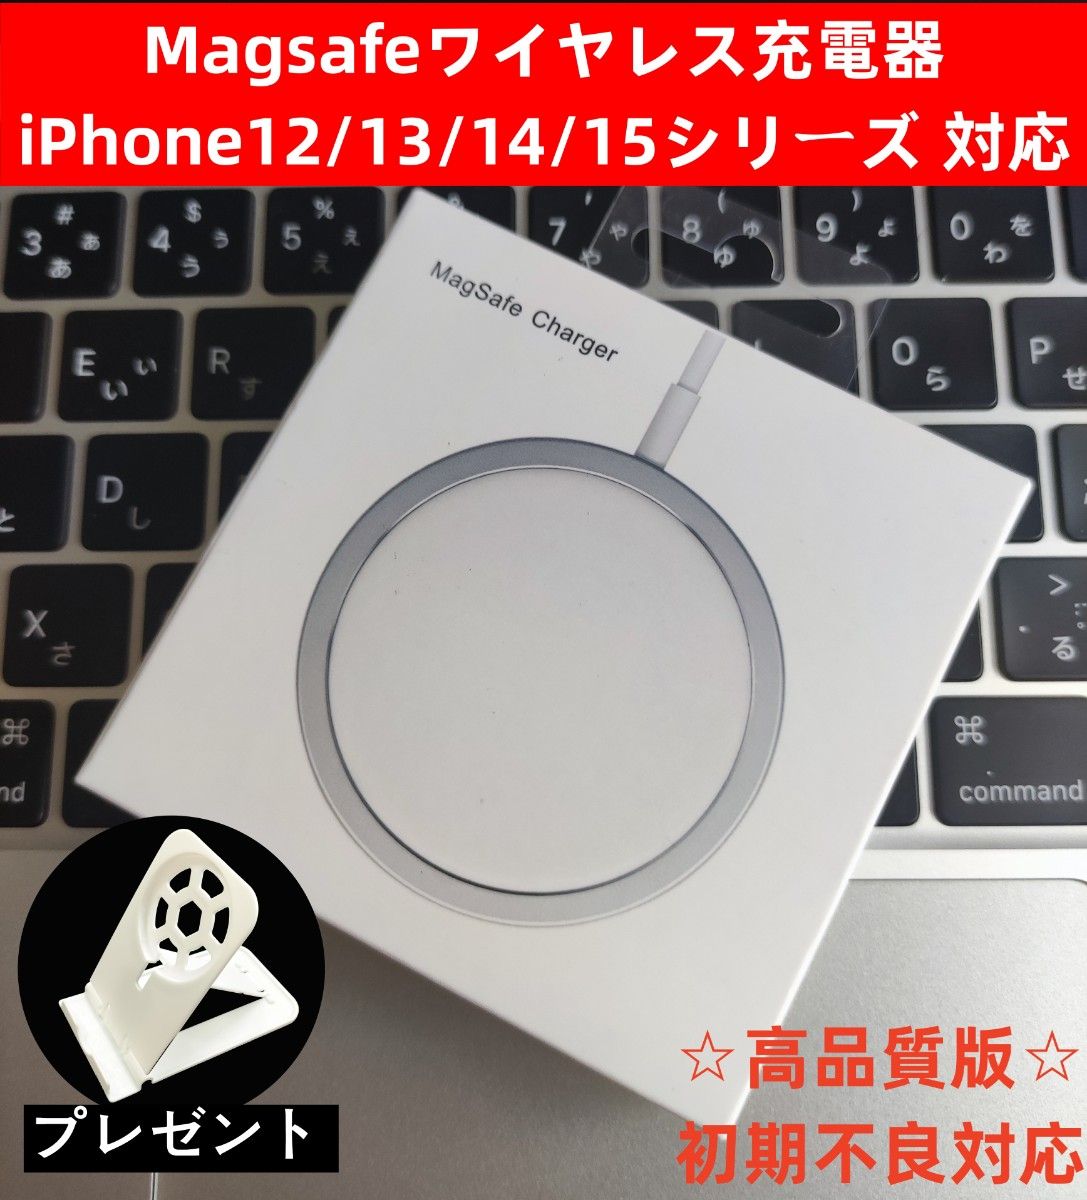 Magsafe マグセーフiPhone12/13/14/15シリーズ ワイヤレス充電器 マグセーフ 置くだけ充電